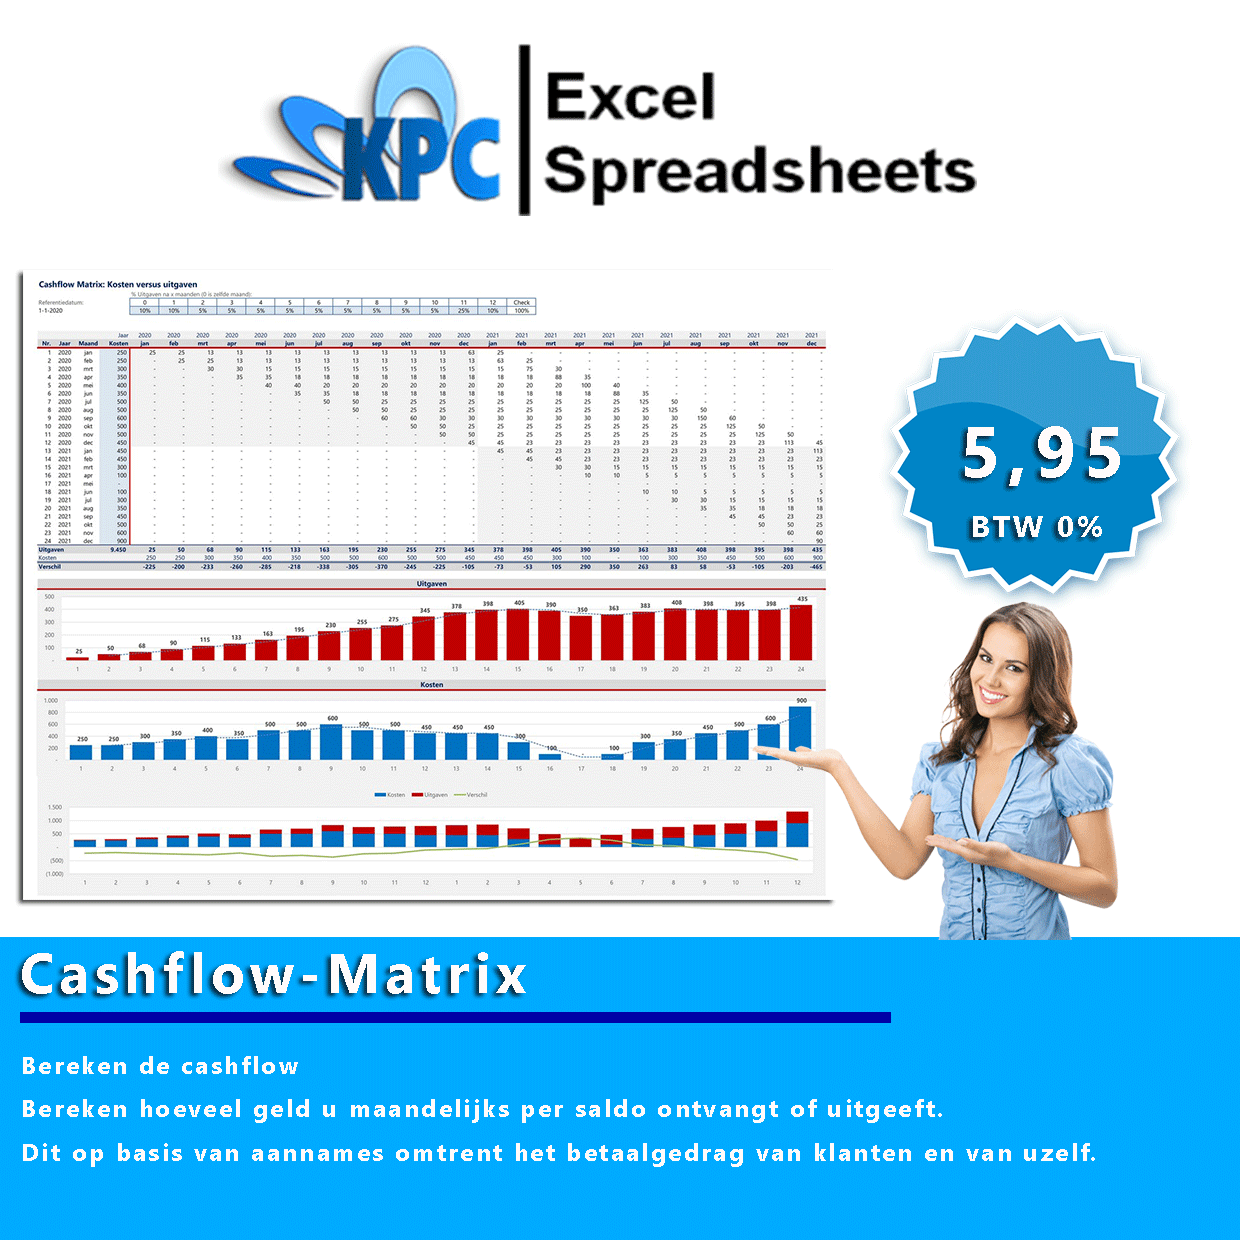 Cashflow Matrix in Excel